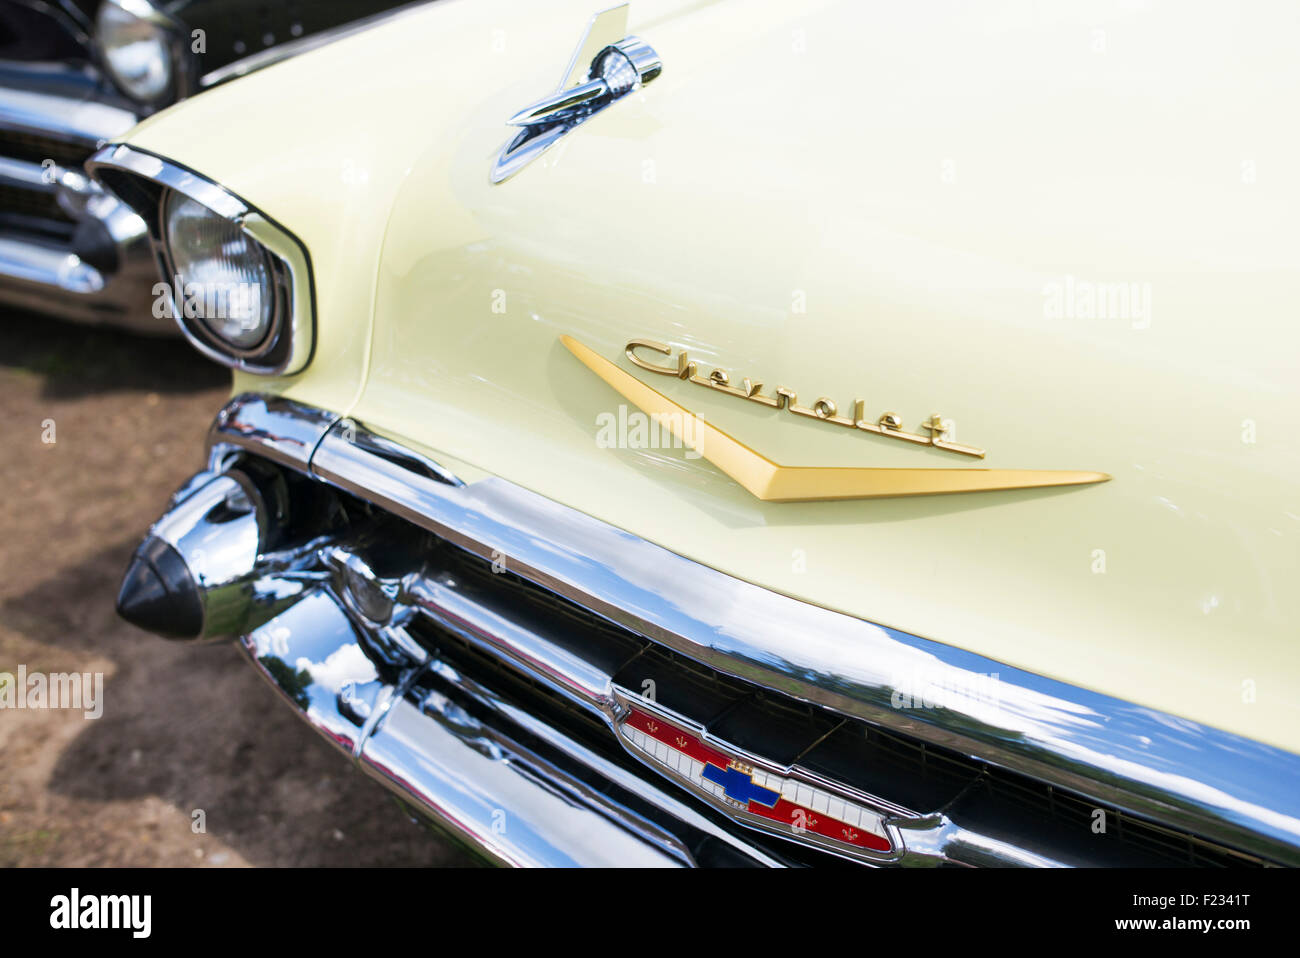 1957 Chevrolet Bel Air. Chevy. Coches clásicos Americanos Foto de stock